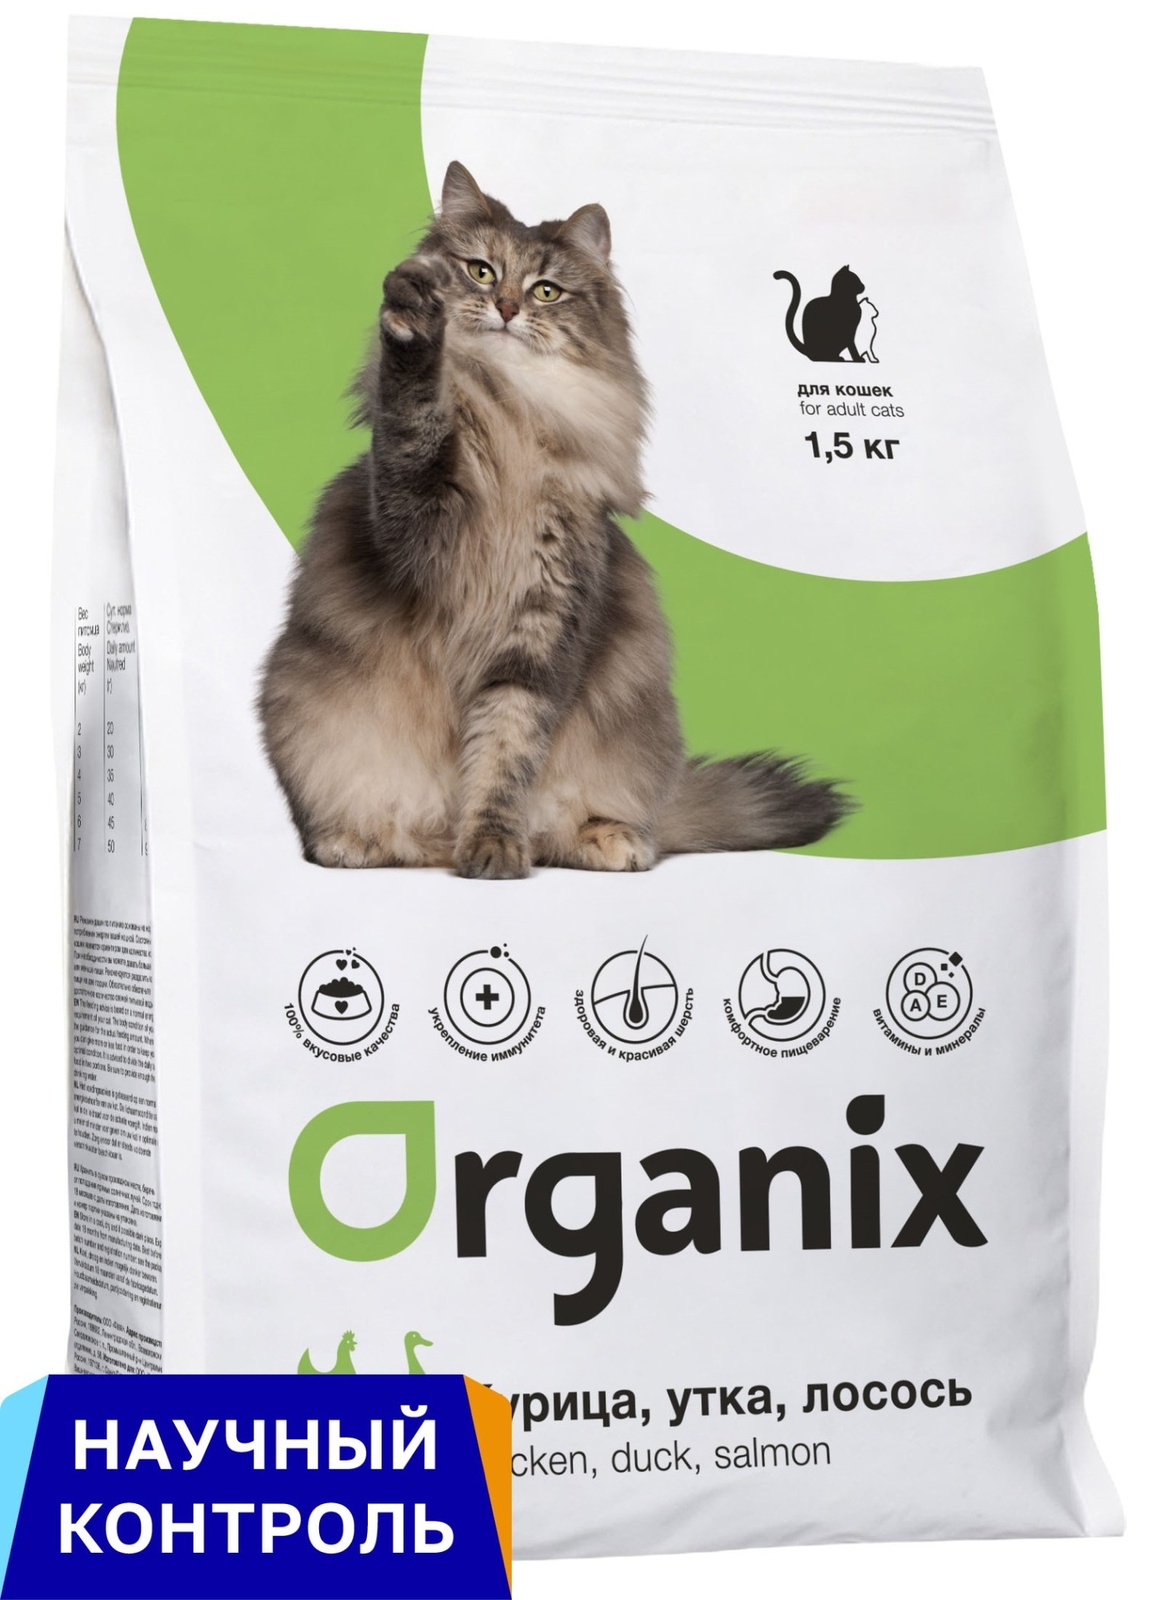 Organix  сухой корм для кошек, три вида мяса: курица, утка и лосось (7,5 кг) Organix  сухой корм для кошек, три вида мяса: курица, утка и лосось (7,5 кг) - фото 1